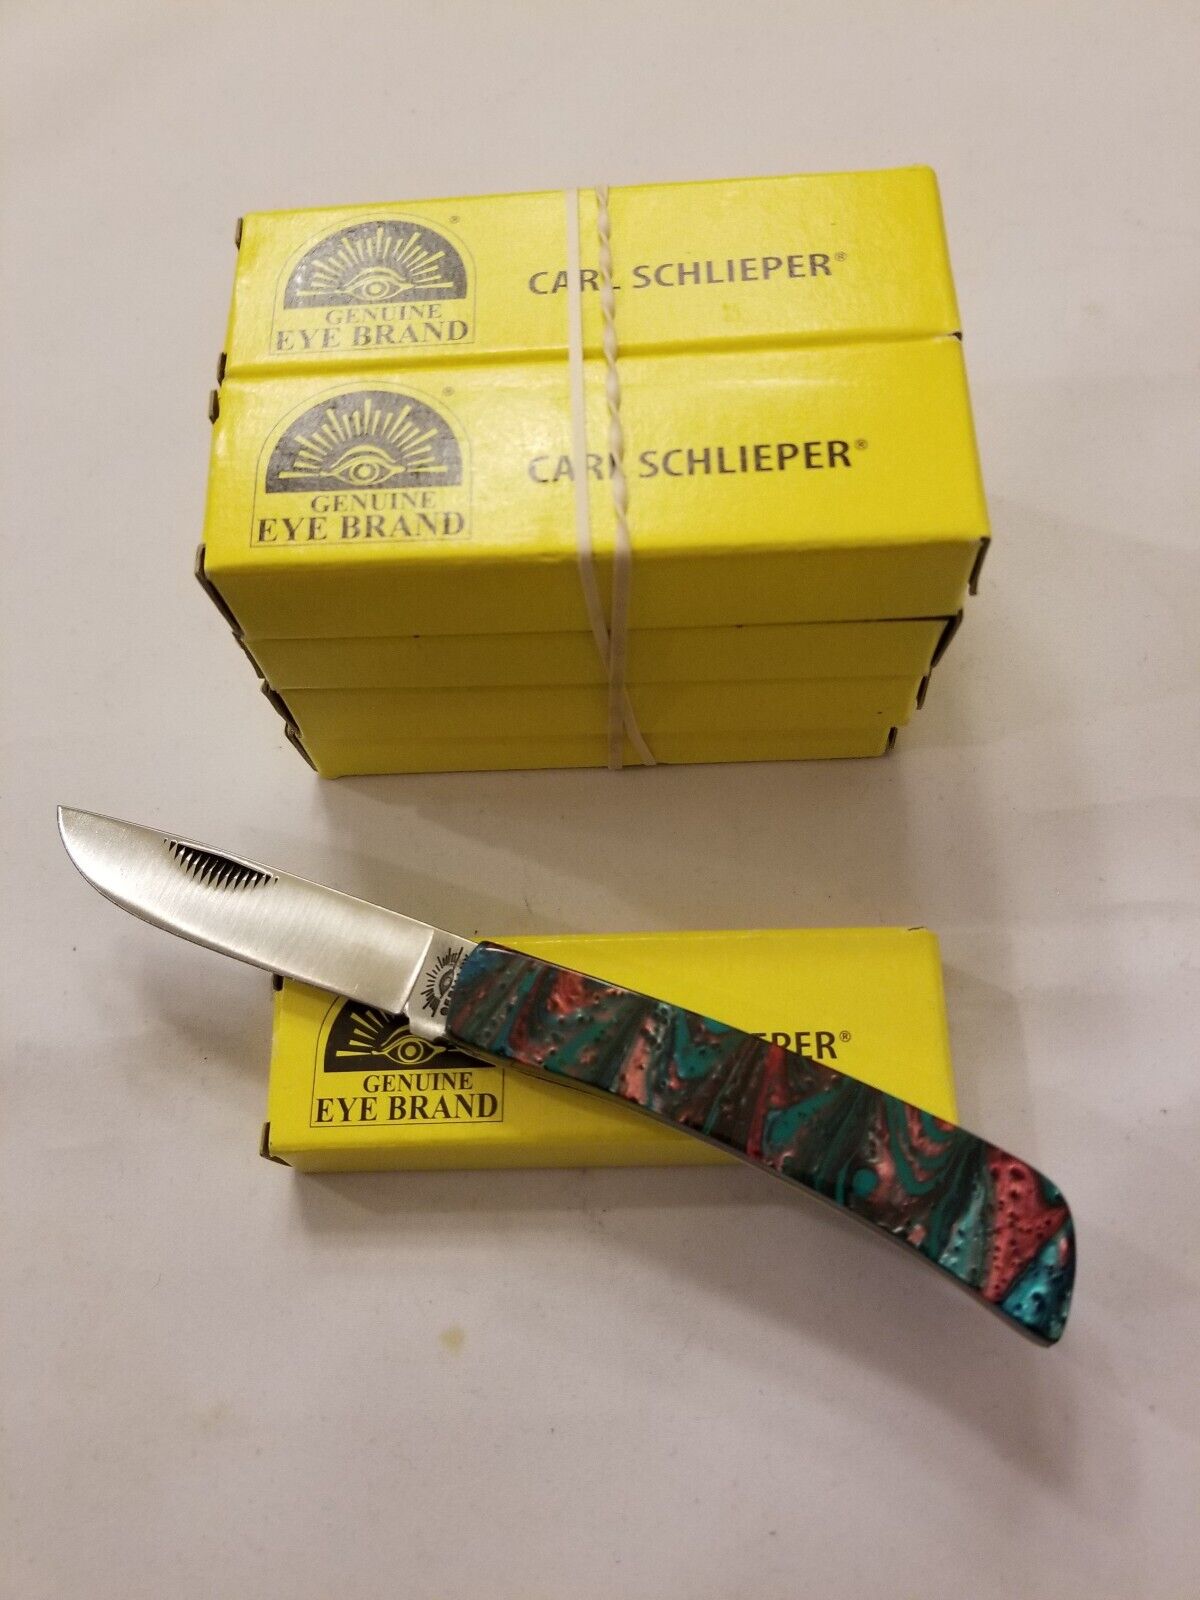 GERMAN EYE BRAND Cutlery Knife - #GE99JRT CLODBUSTER JR. - TEAL Handle - GERMANY